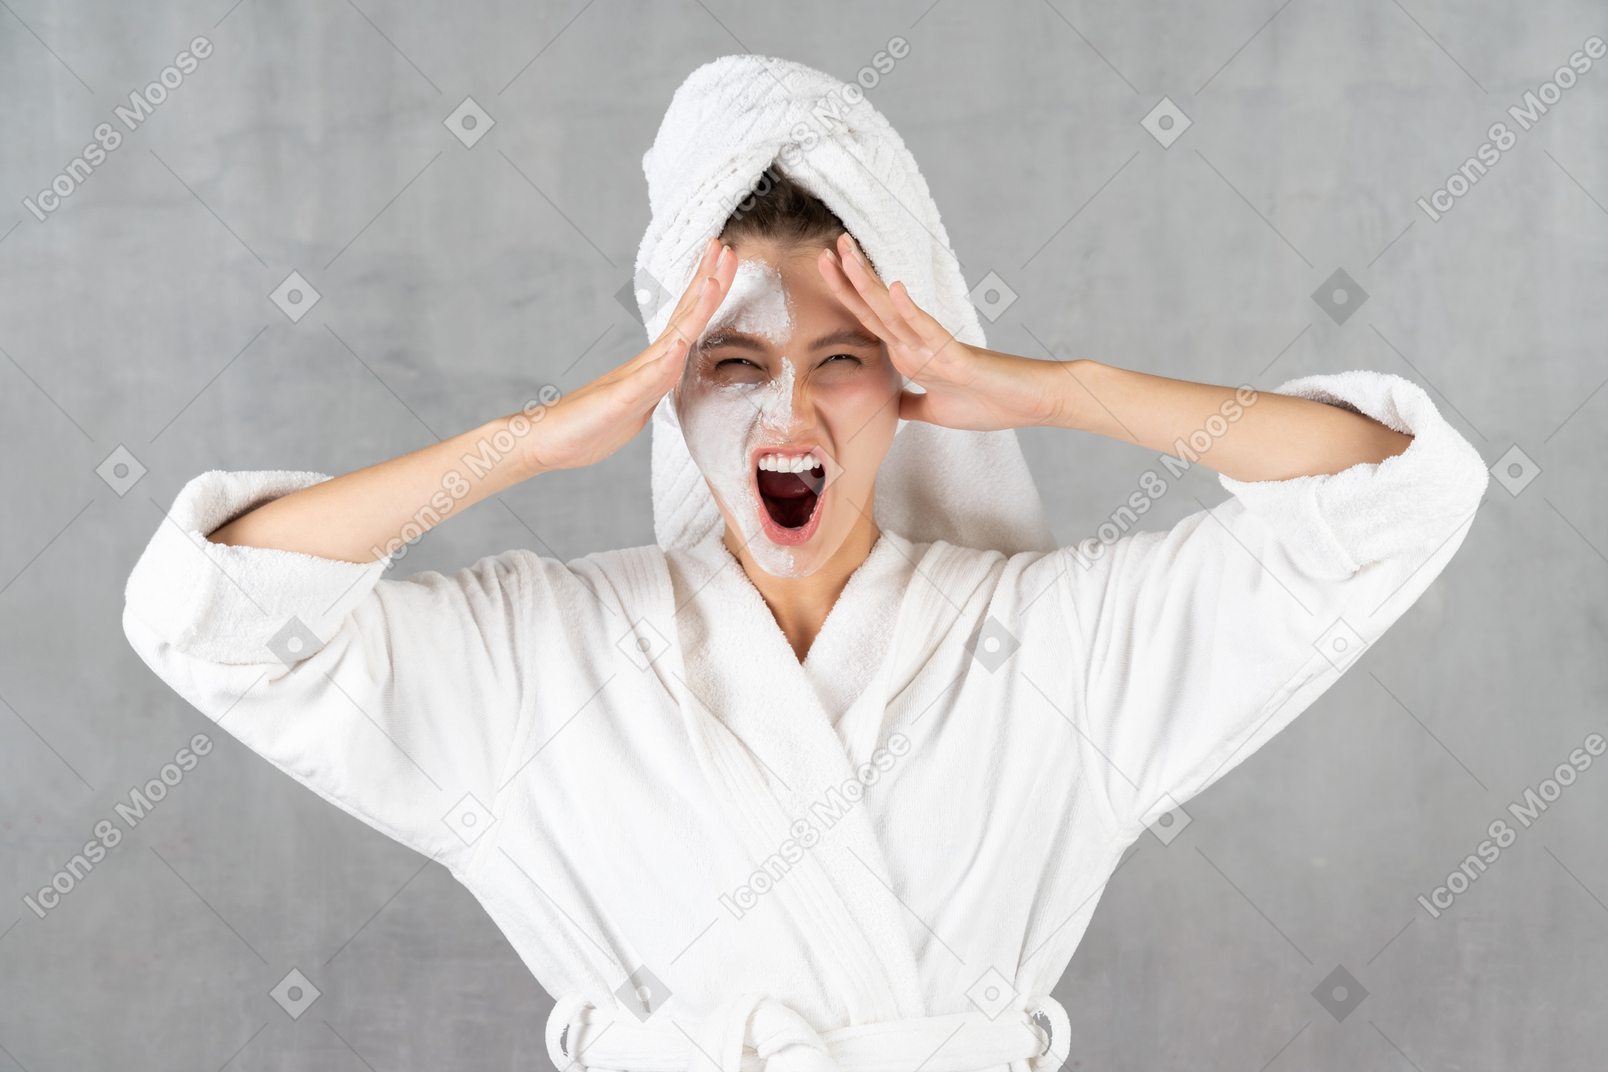 Young woman in bathrobe shouting